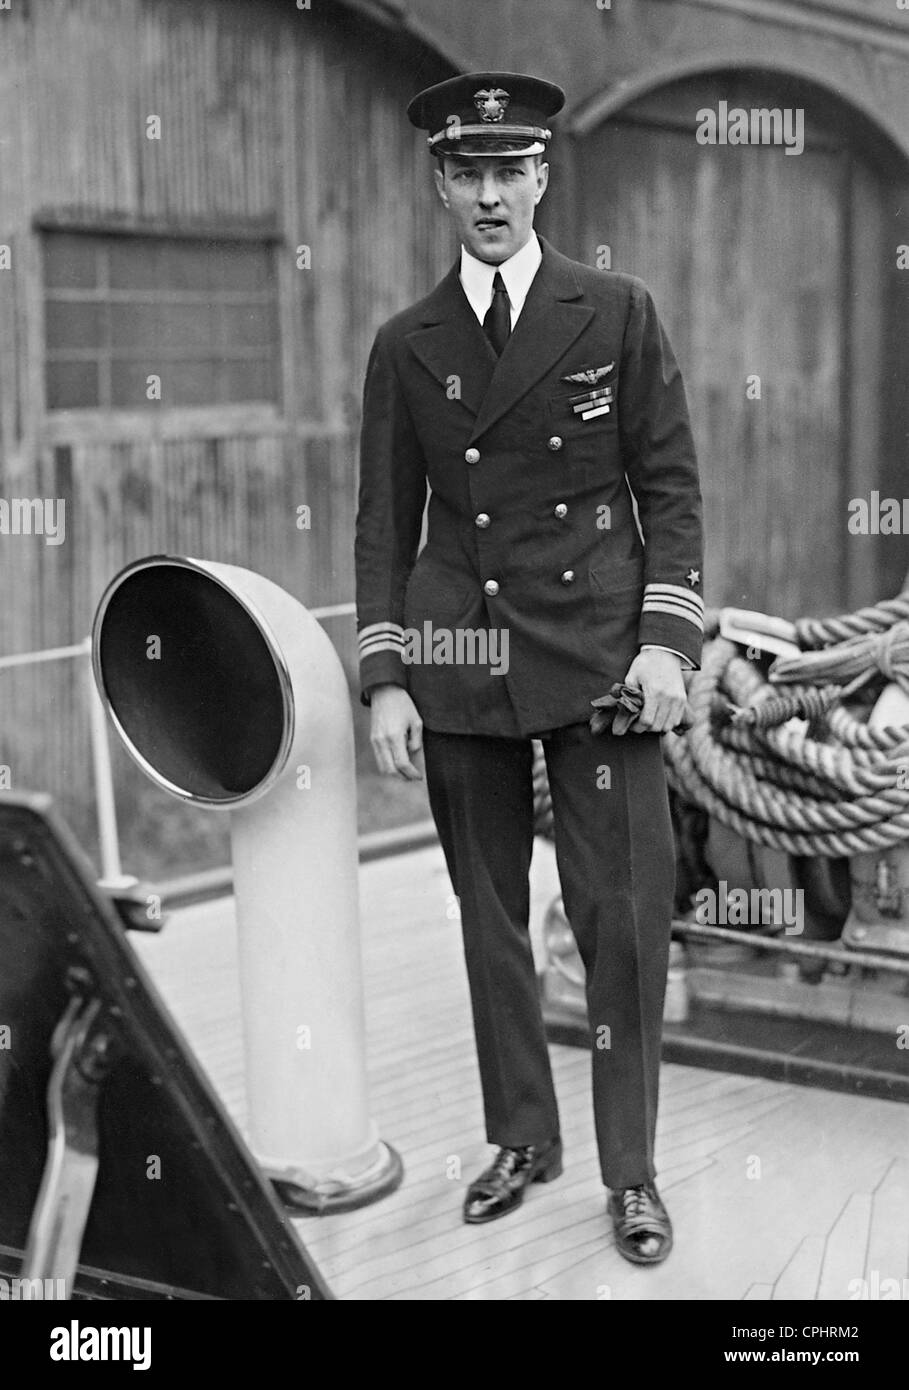 Explorateur de l'arctique américain et pionnier de l'aviation Richard E. Byrd (1888-1957). Banque D'Images